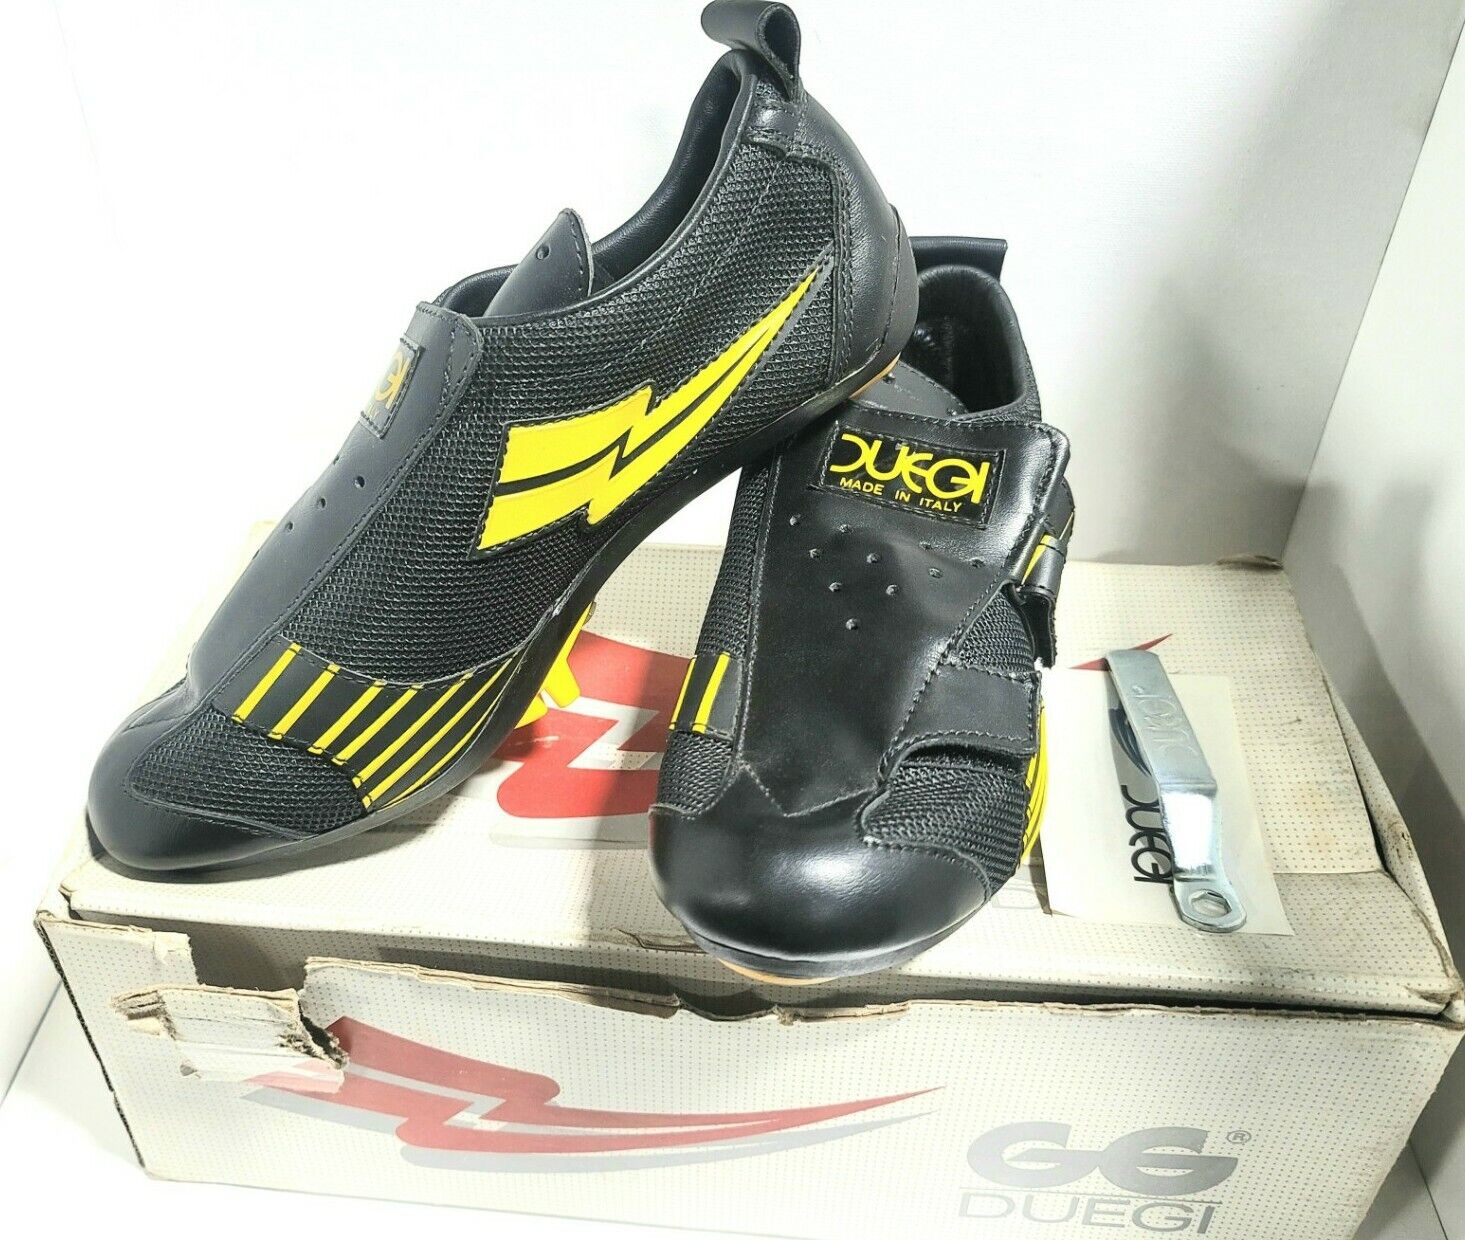 Vtg Duegi Cycling Shoes Size 39 Eur Black Yellow Nos,nib